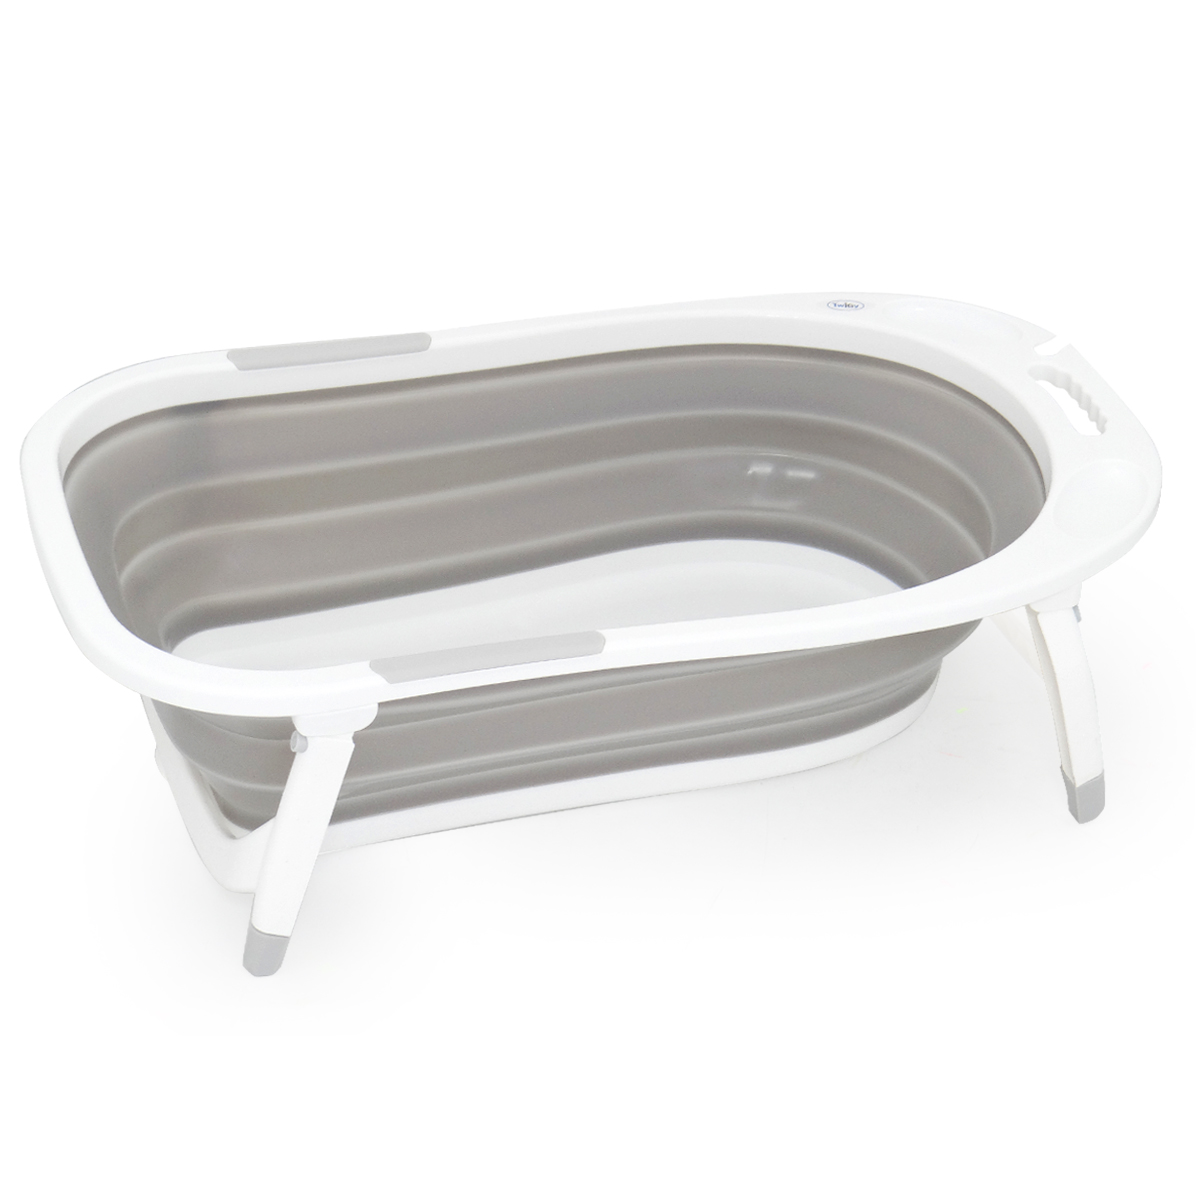 אמבטיה מתקפלת טוויגי כנרת – Twigy Kineret™ Foldable Bath Tub